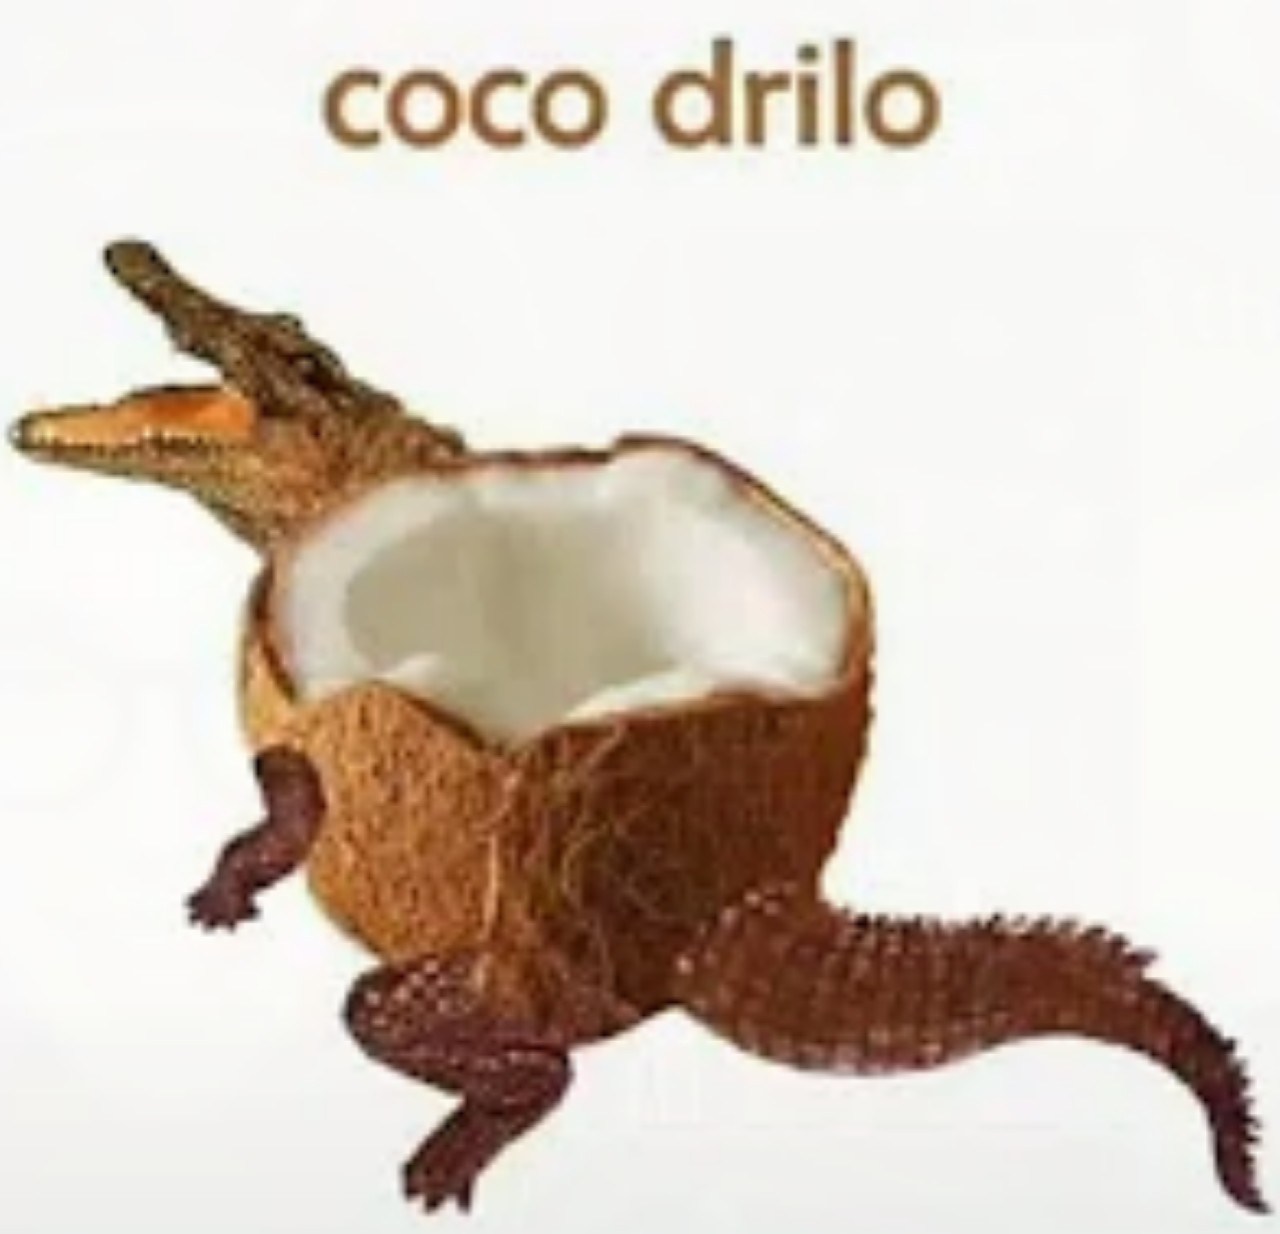 Coco-drilo - meme